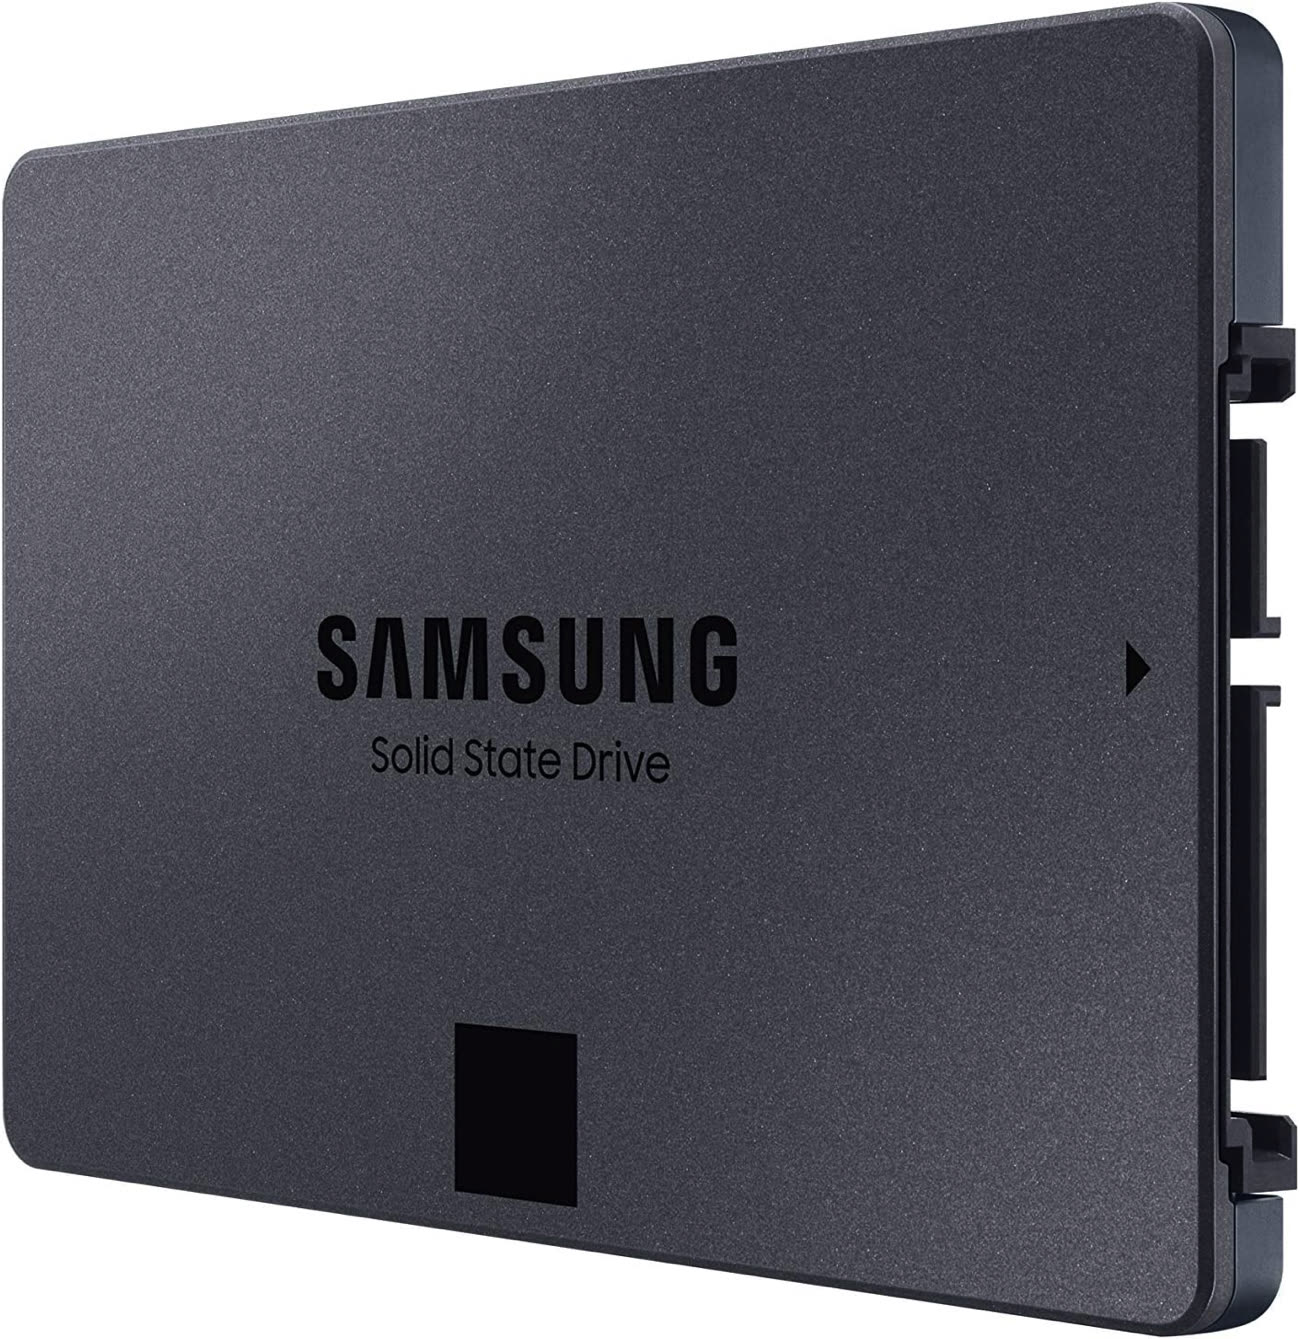 Grosse chute de prix sur ce SSD Samsung de 8 To de nouvelle génération ! 